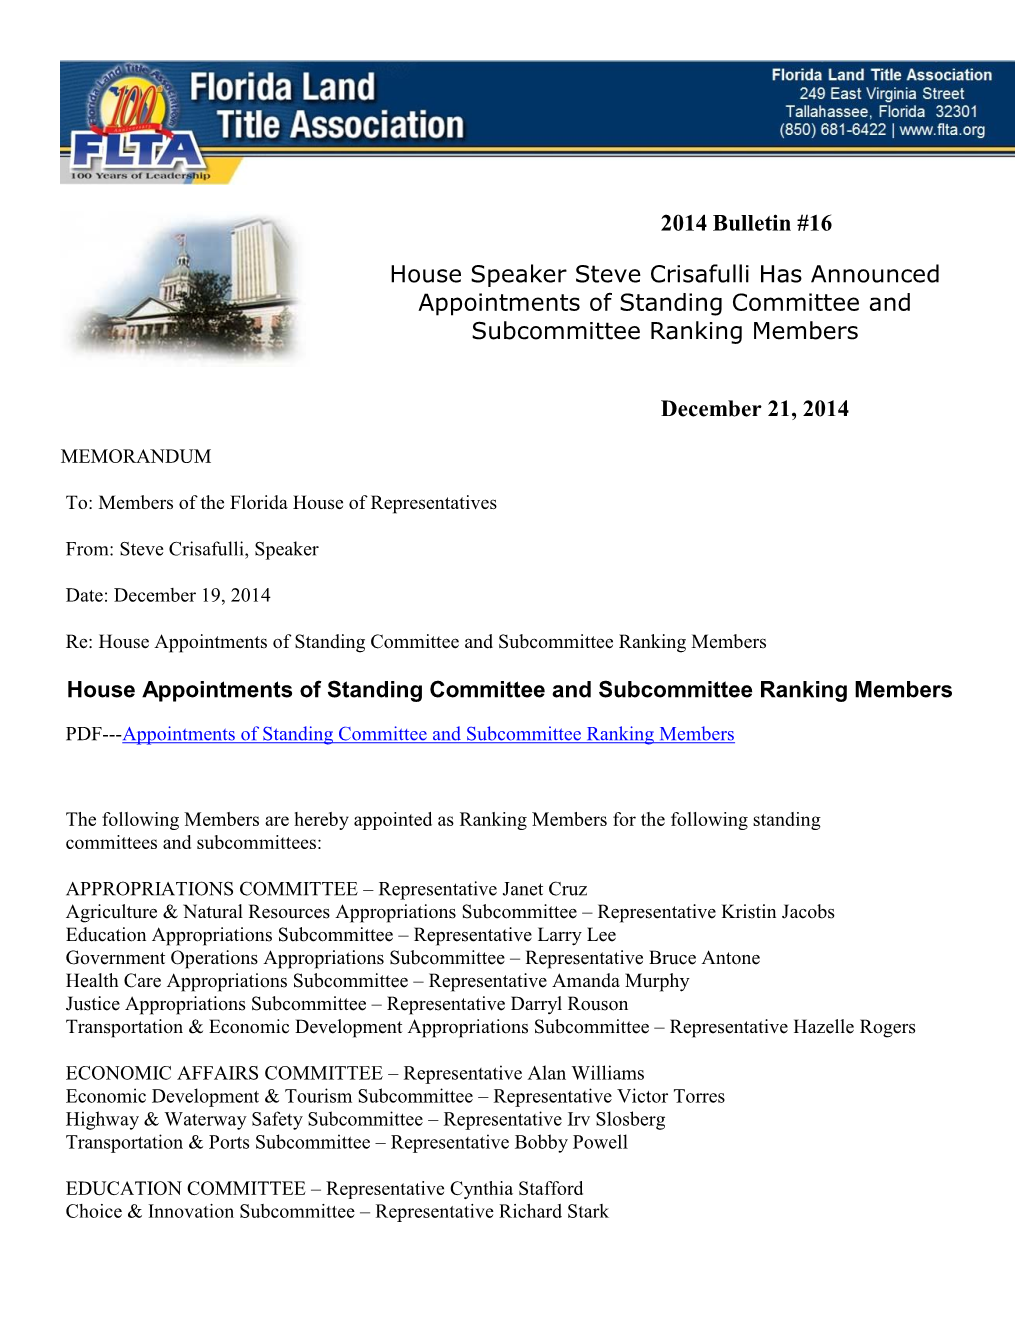 2014 Bulletin #16 House Speaker Steve Crisafulli Has Announced